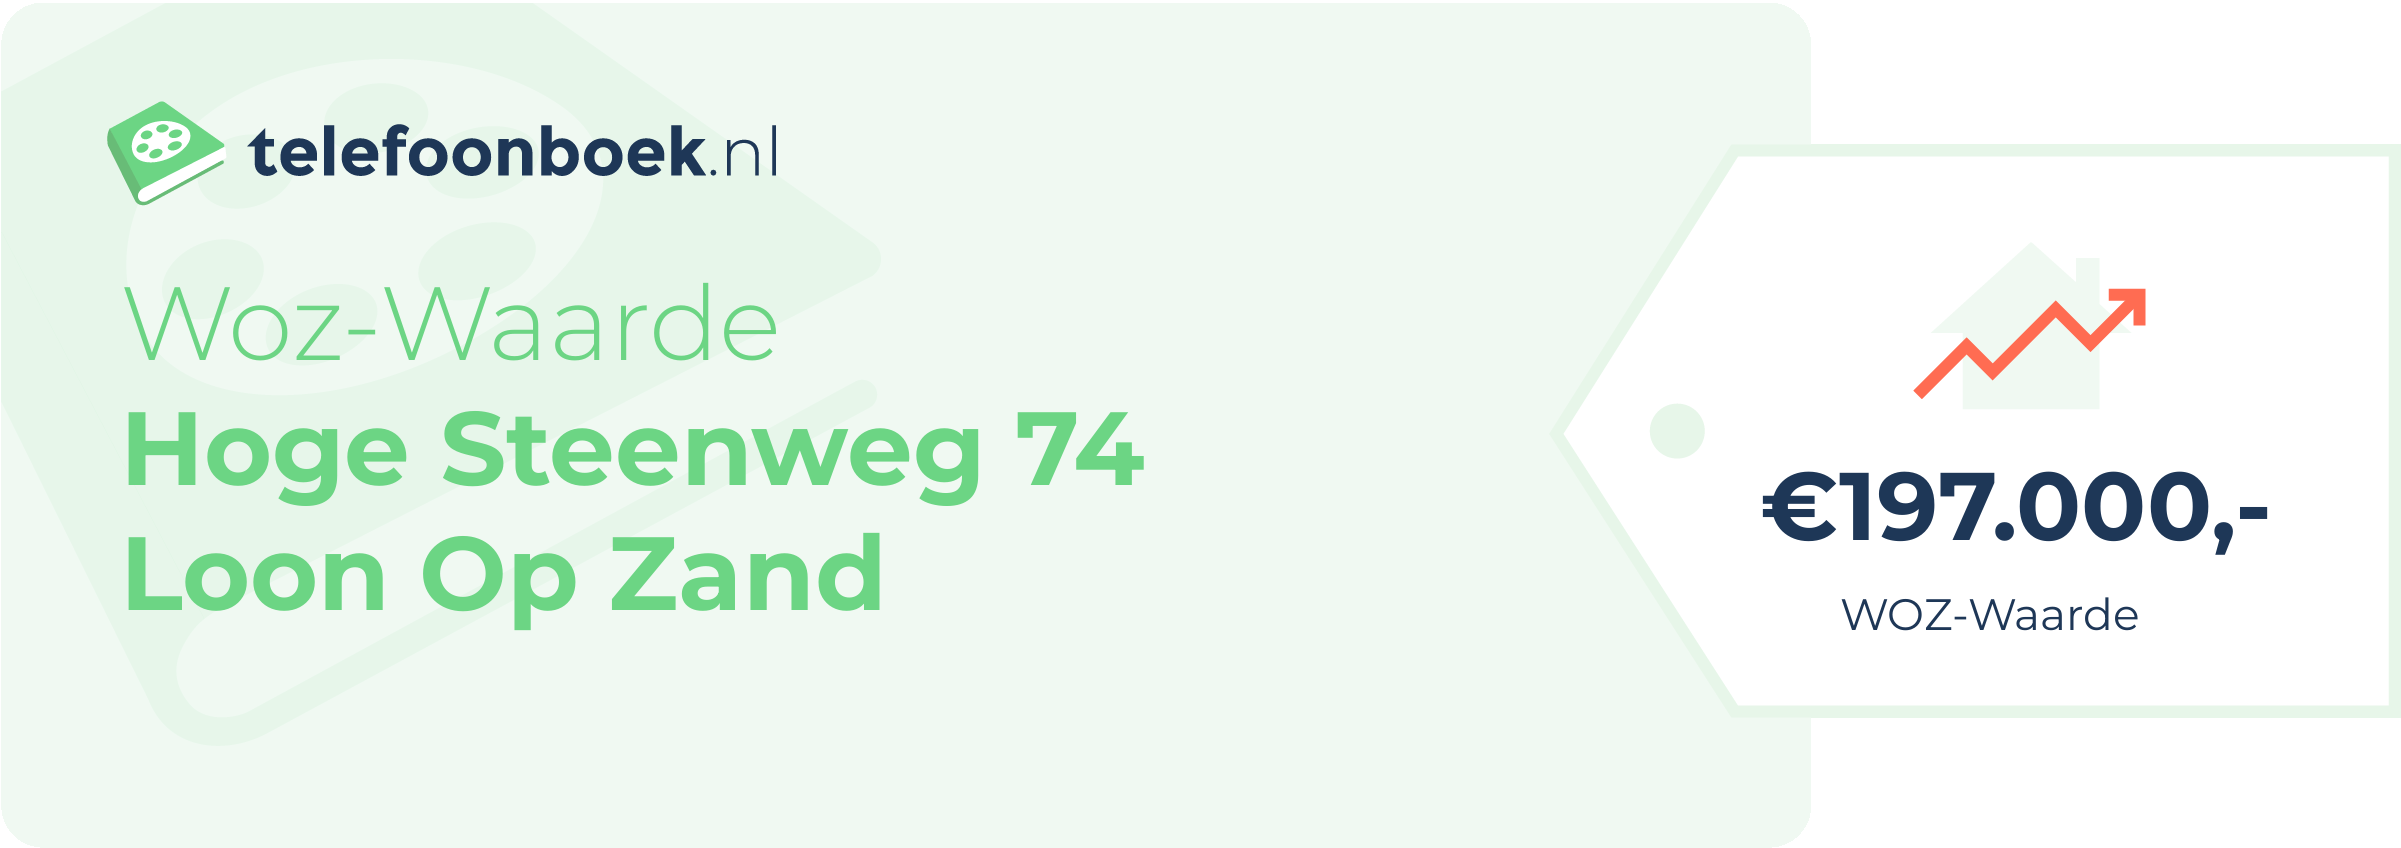 WOZ-waarde Hoge Steenweg 74 Loon Op Zand